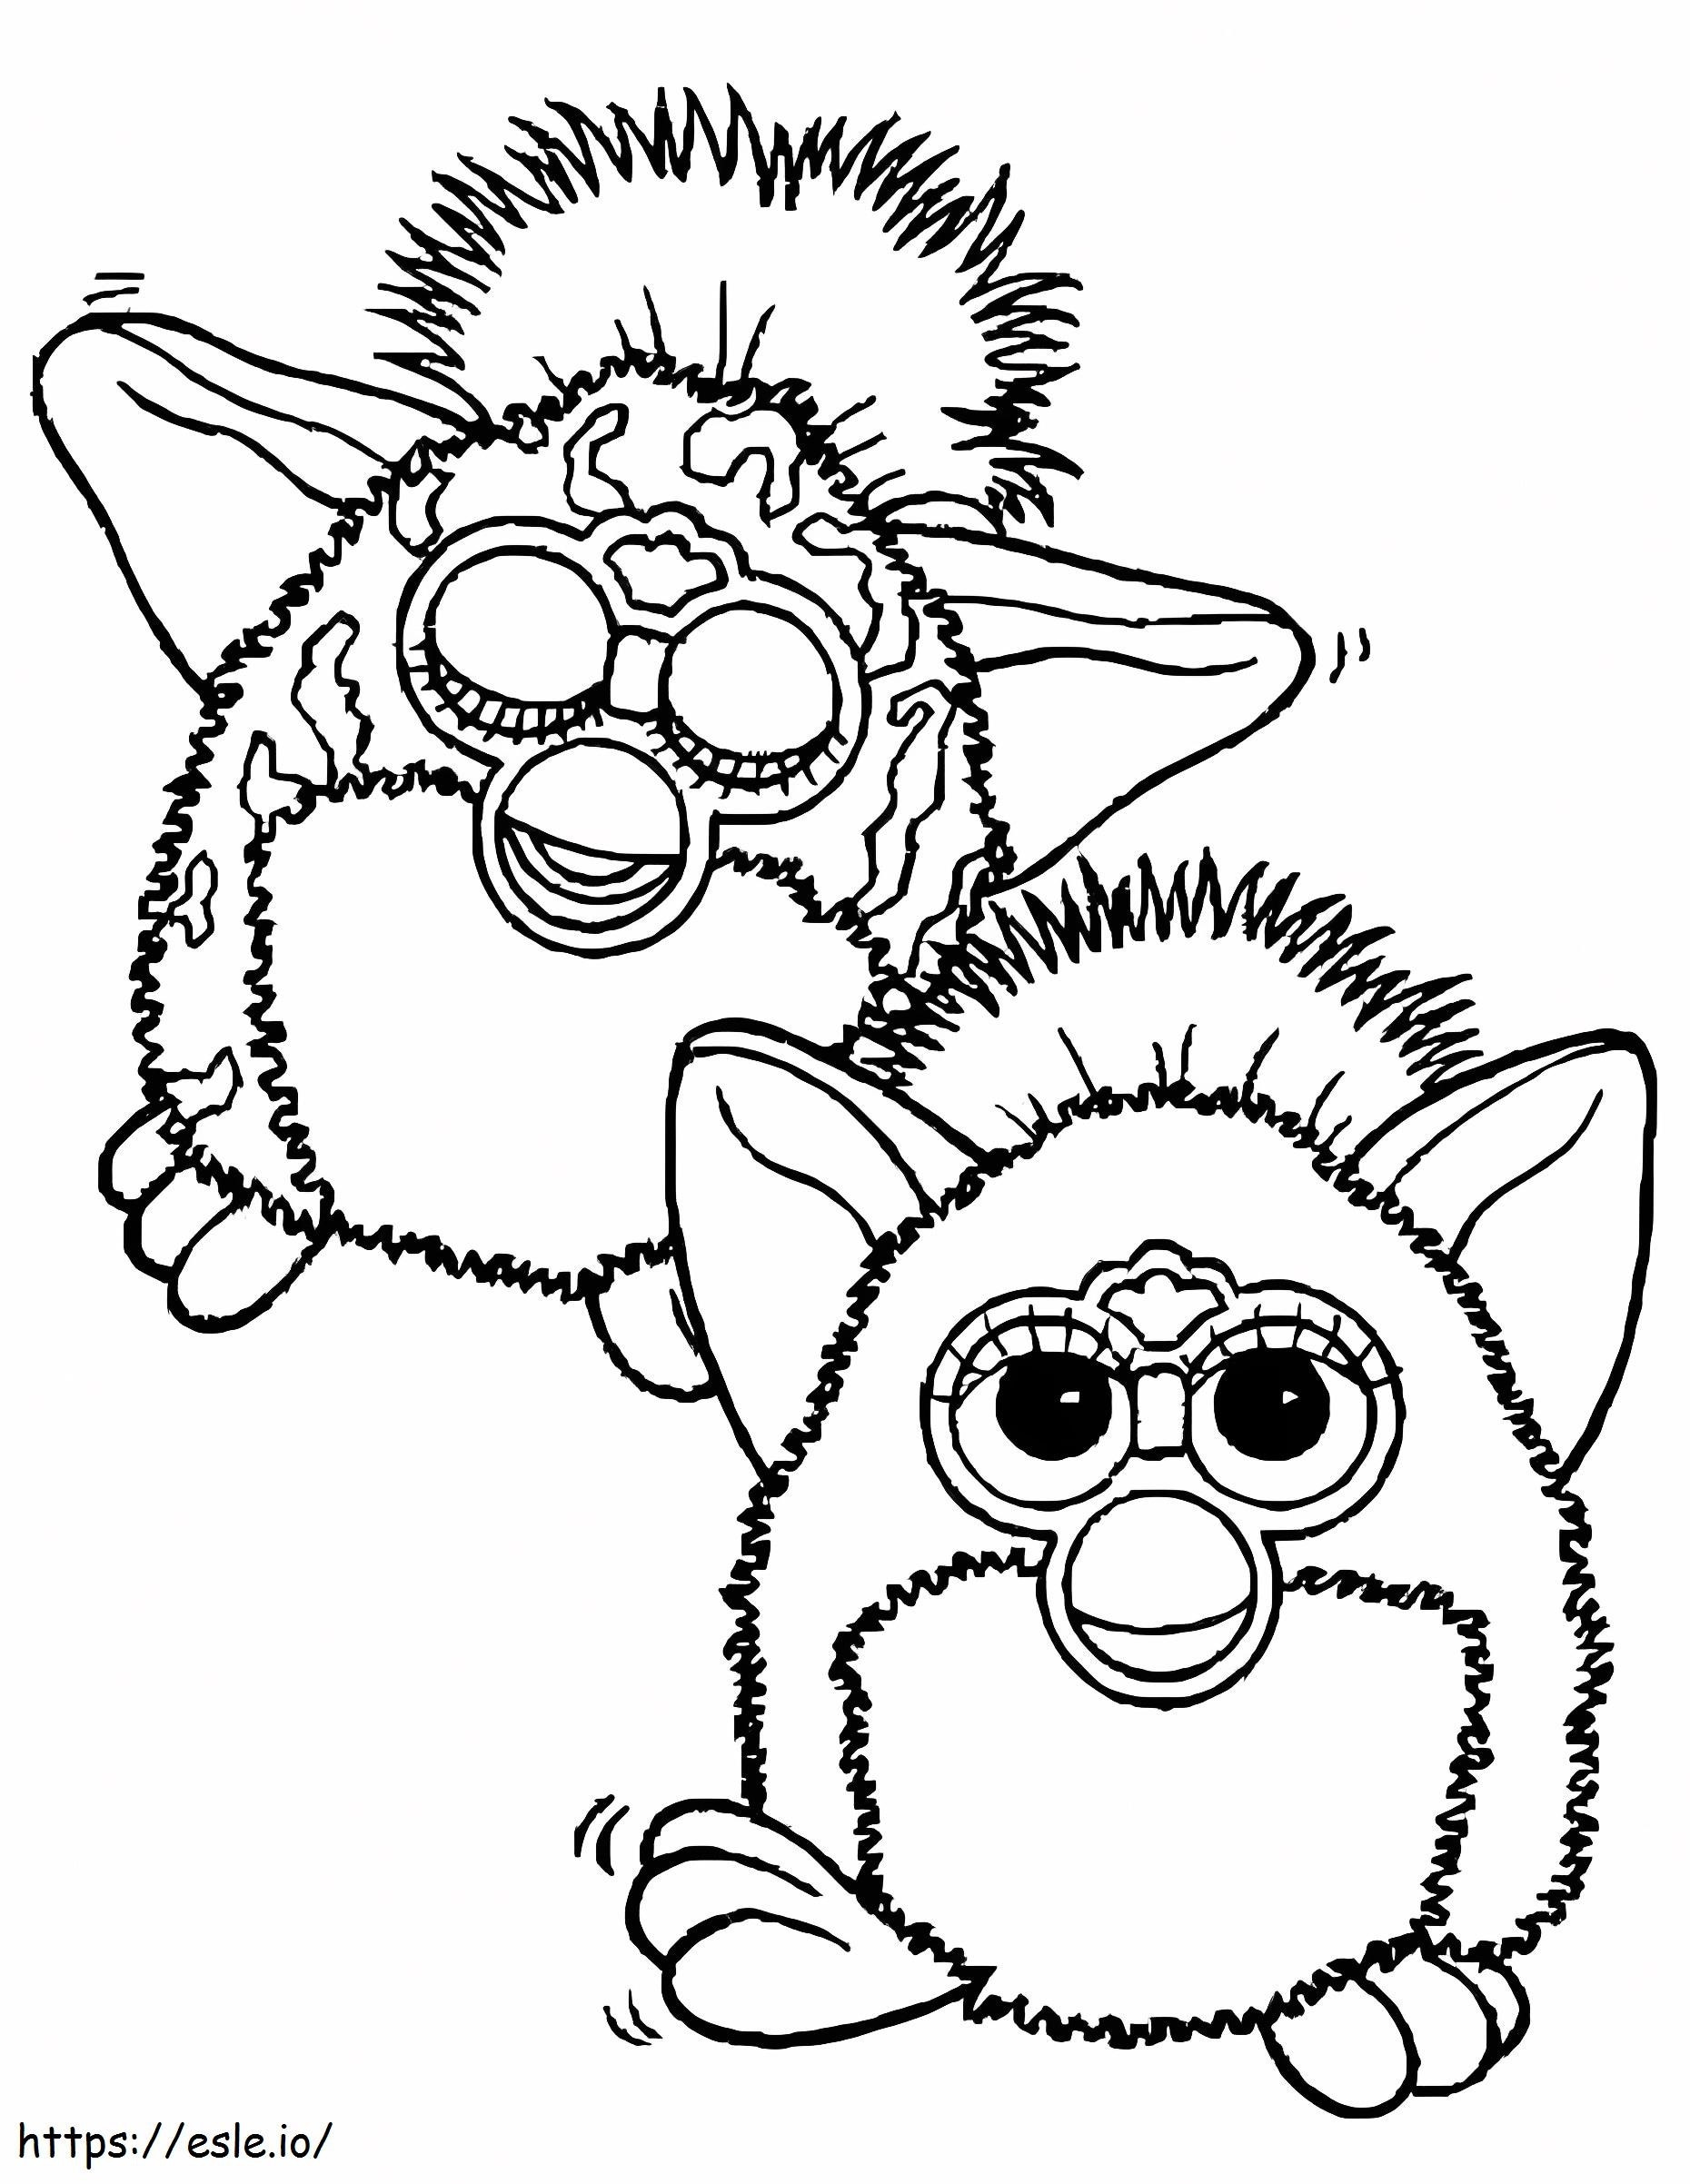 Dwa Furby'ego kolorowanka